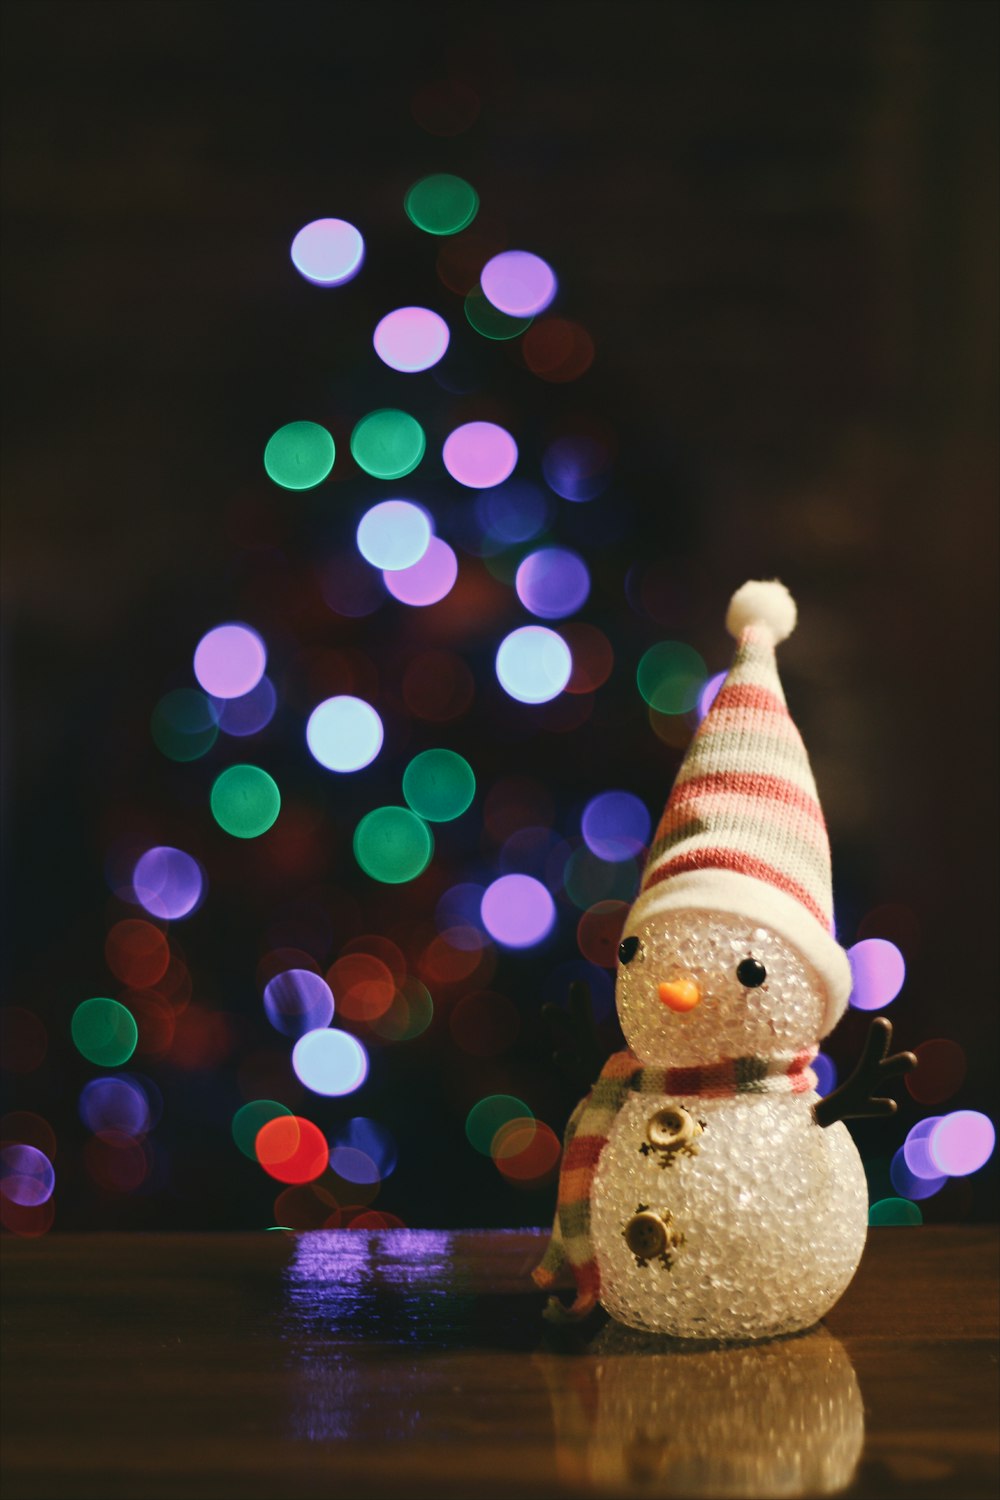 Uma pequena figura de boneco de neve sentada no chão em frente a uma árvore de Natal.